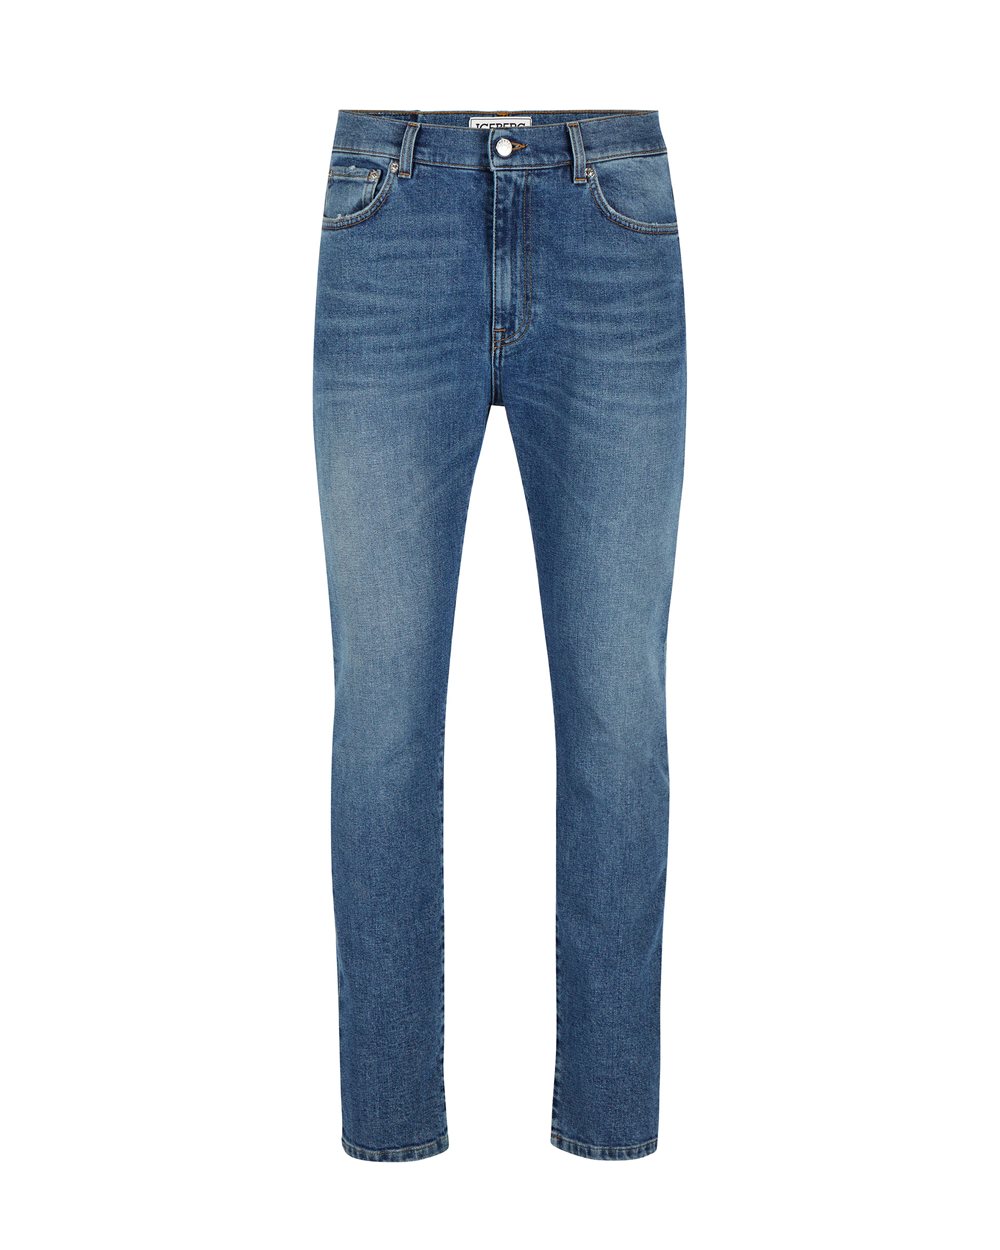 Faded 5-pocket blue jeans - SALE | Iceberg - Official Website